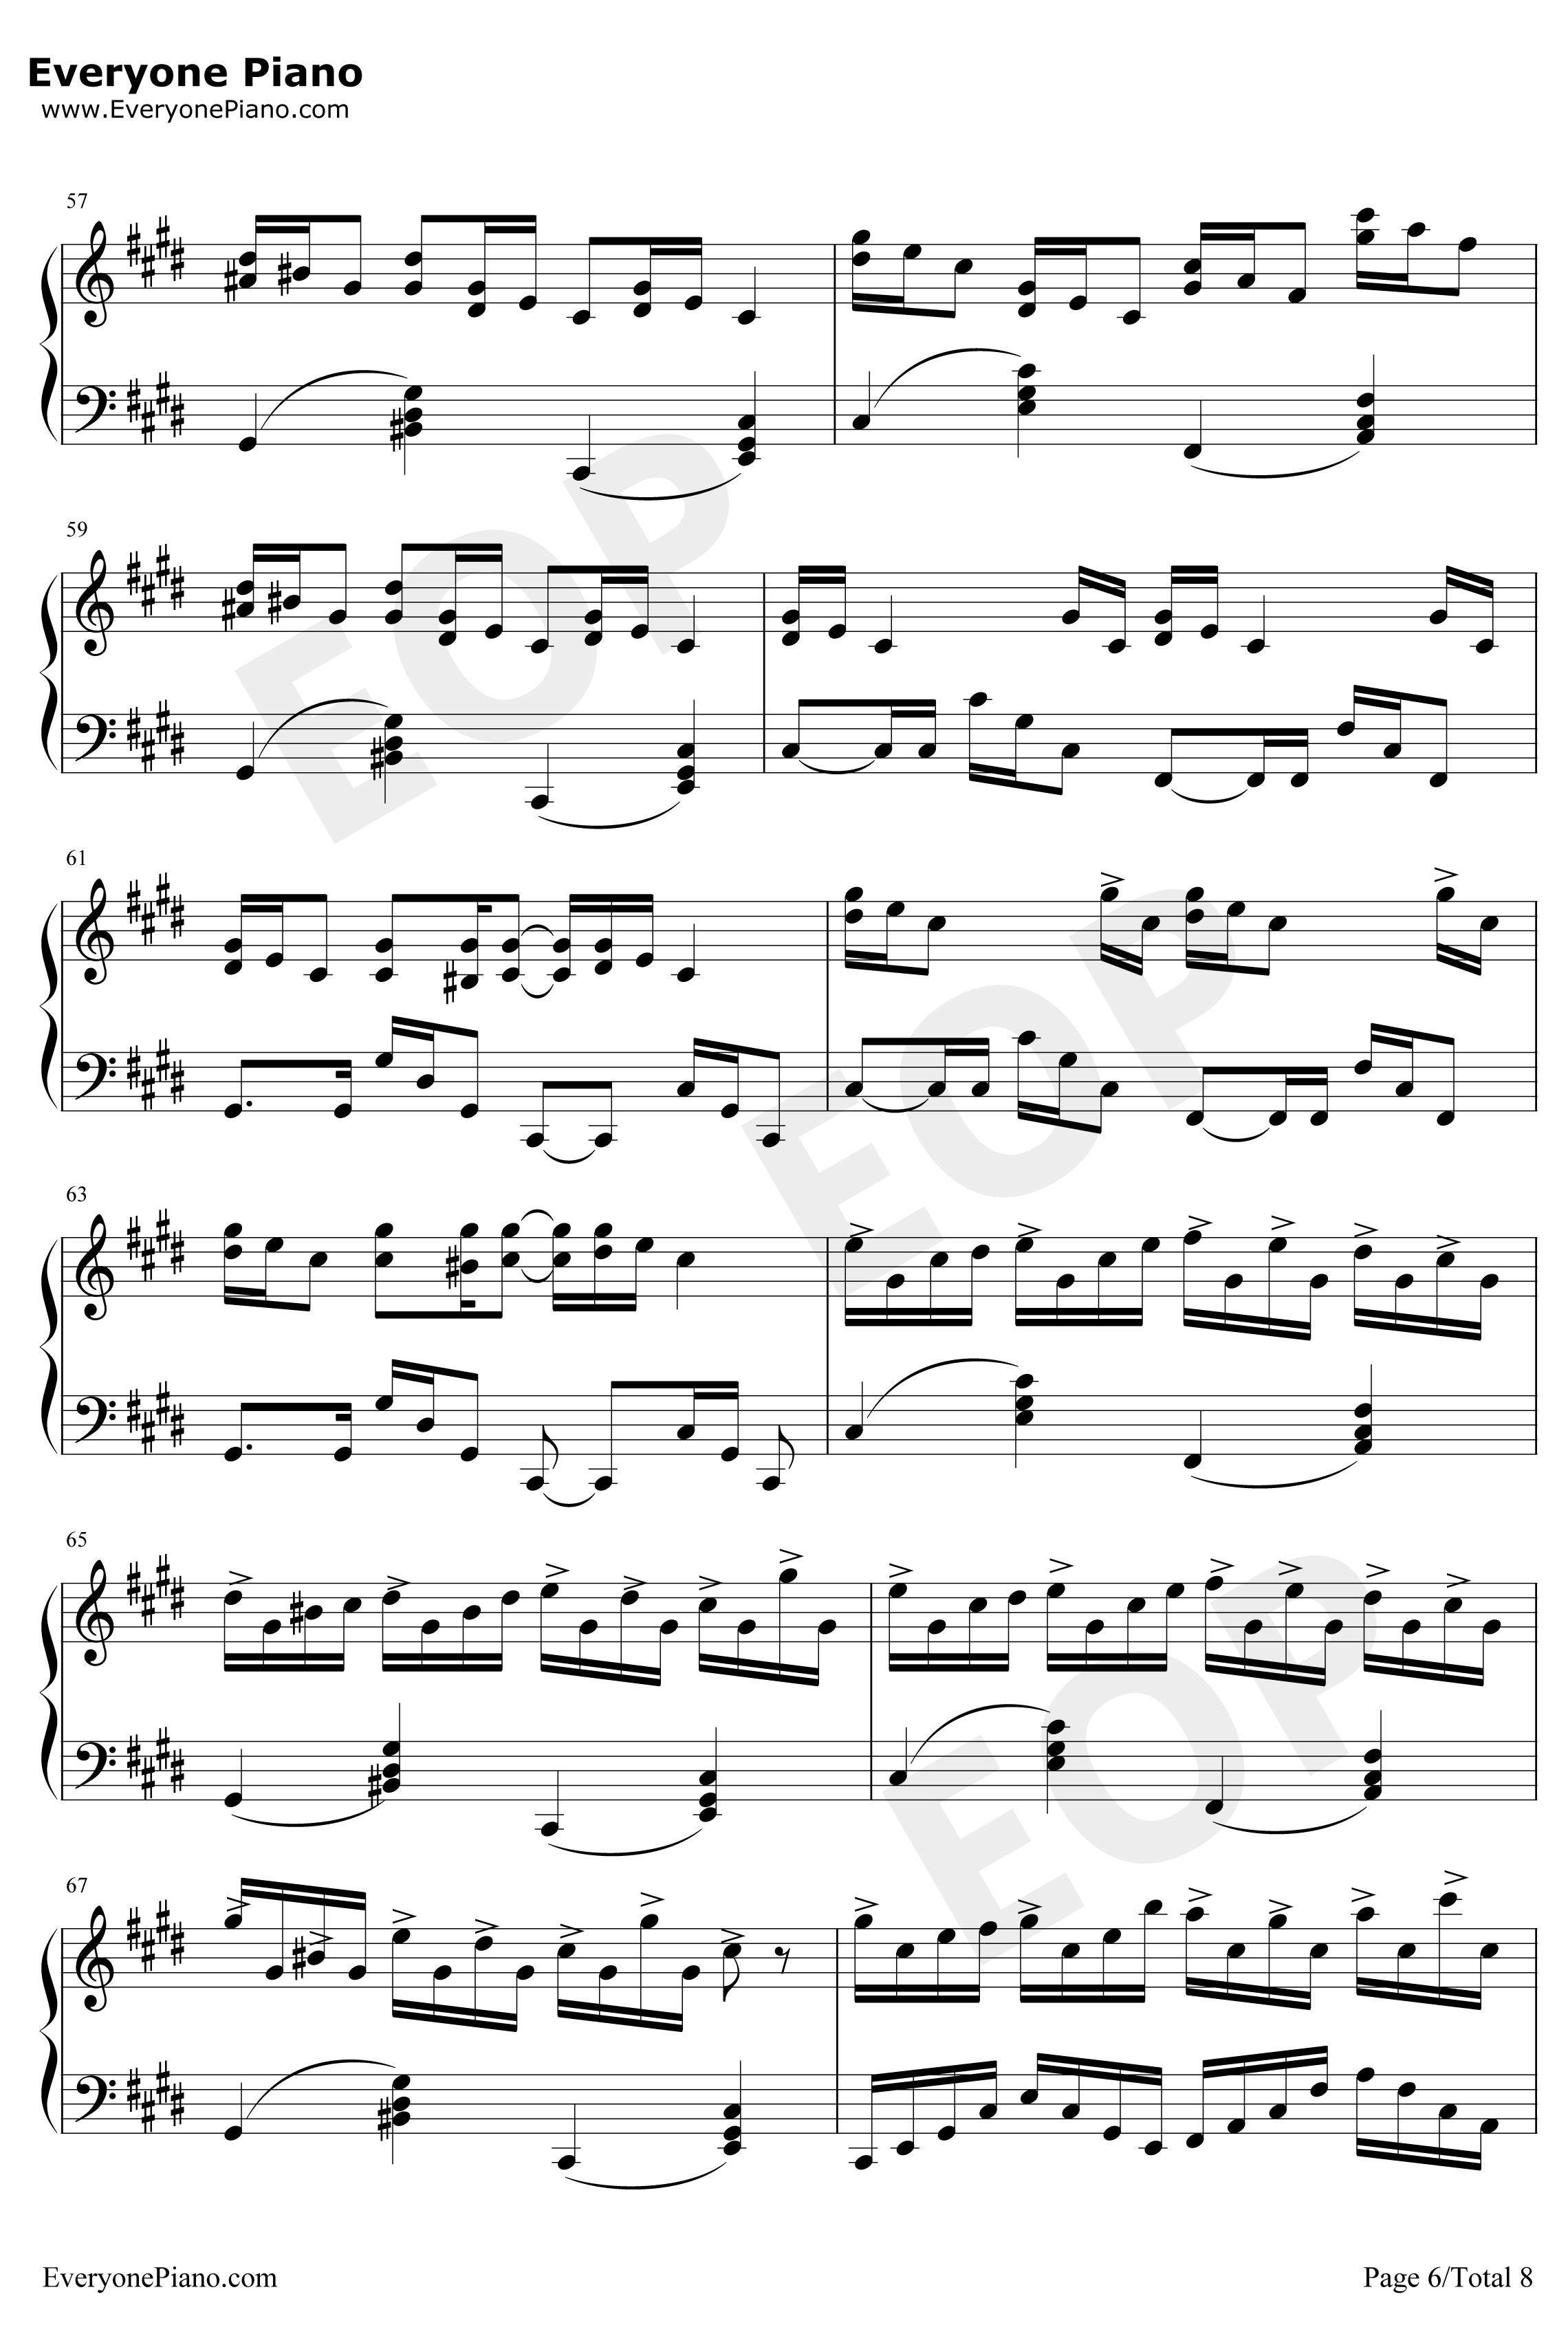 克罗地亚狂想曲钢琴谱-完美版-马克西姆6